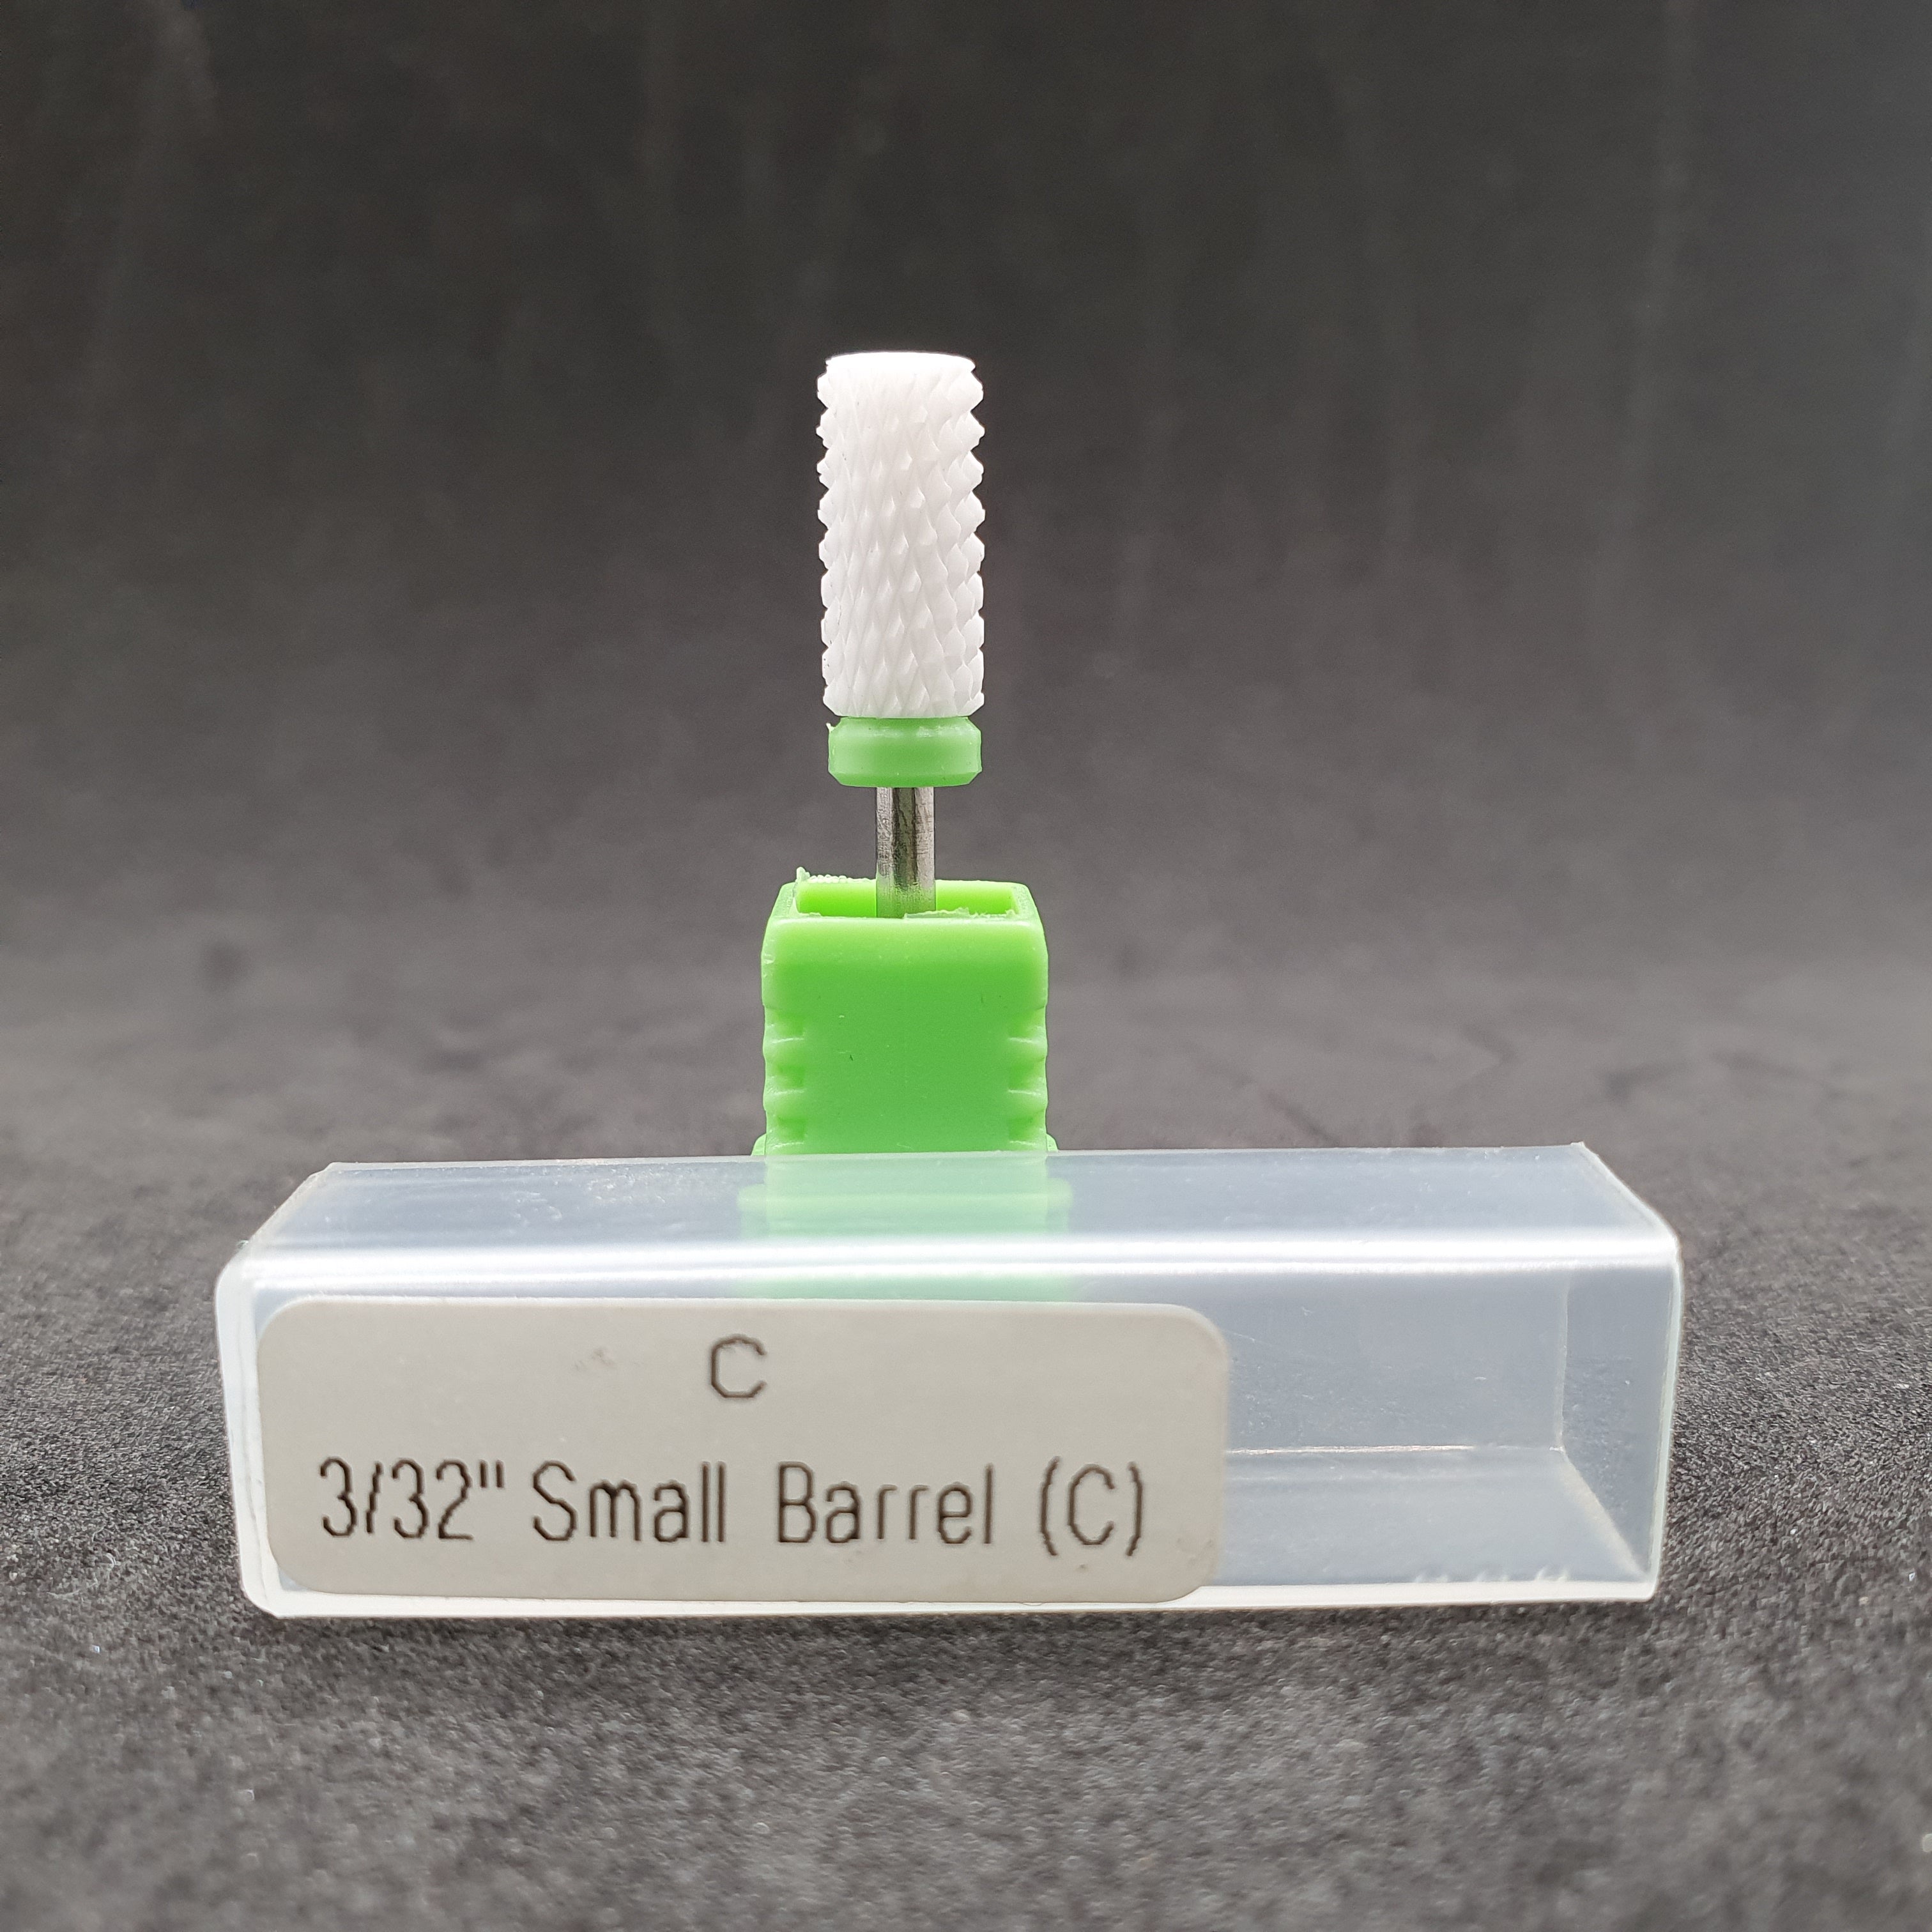 C 3/32" SMALL BARREL (C)